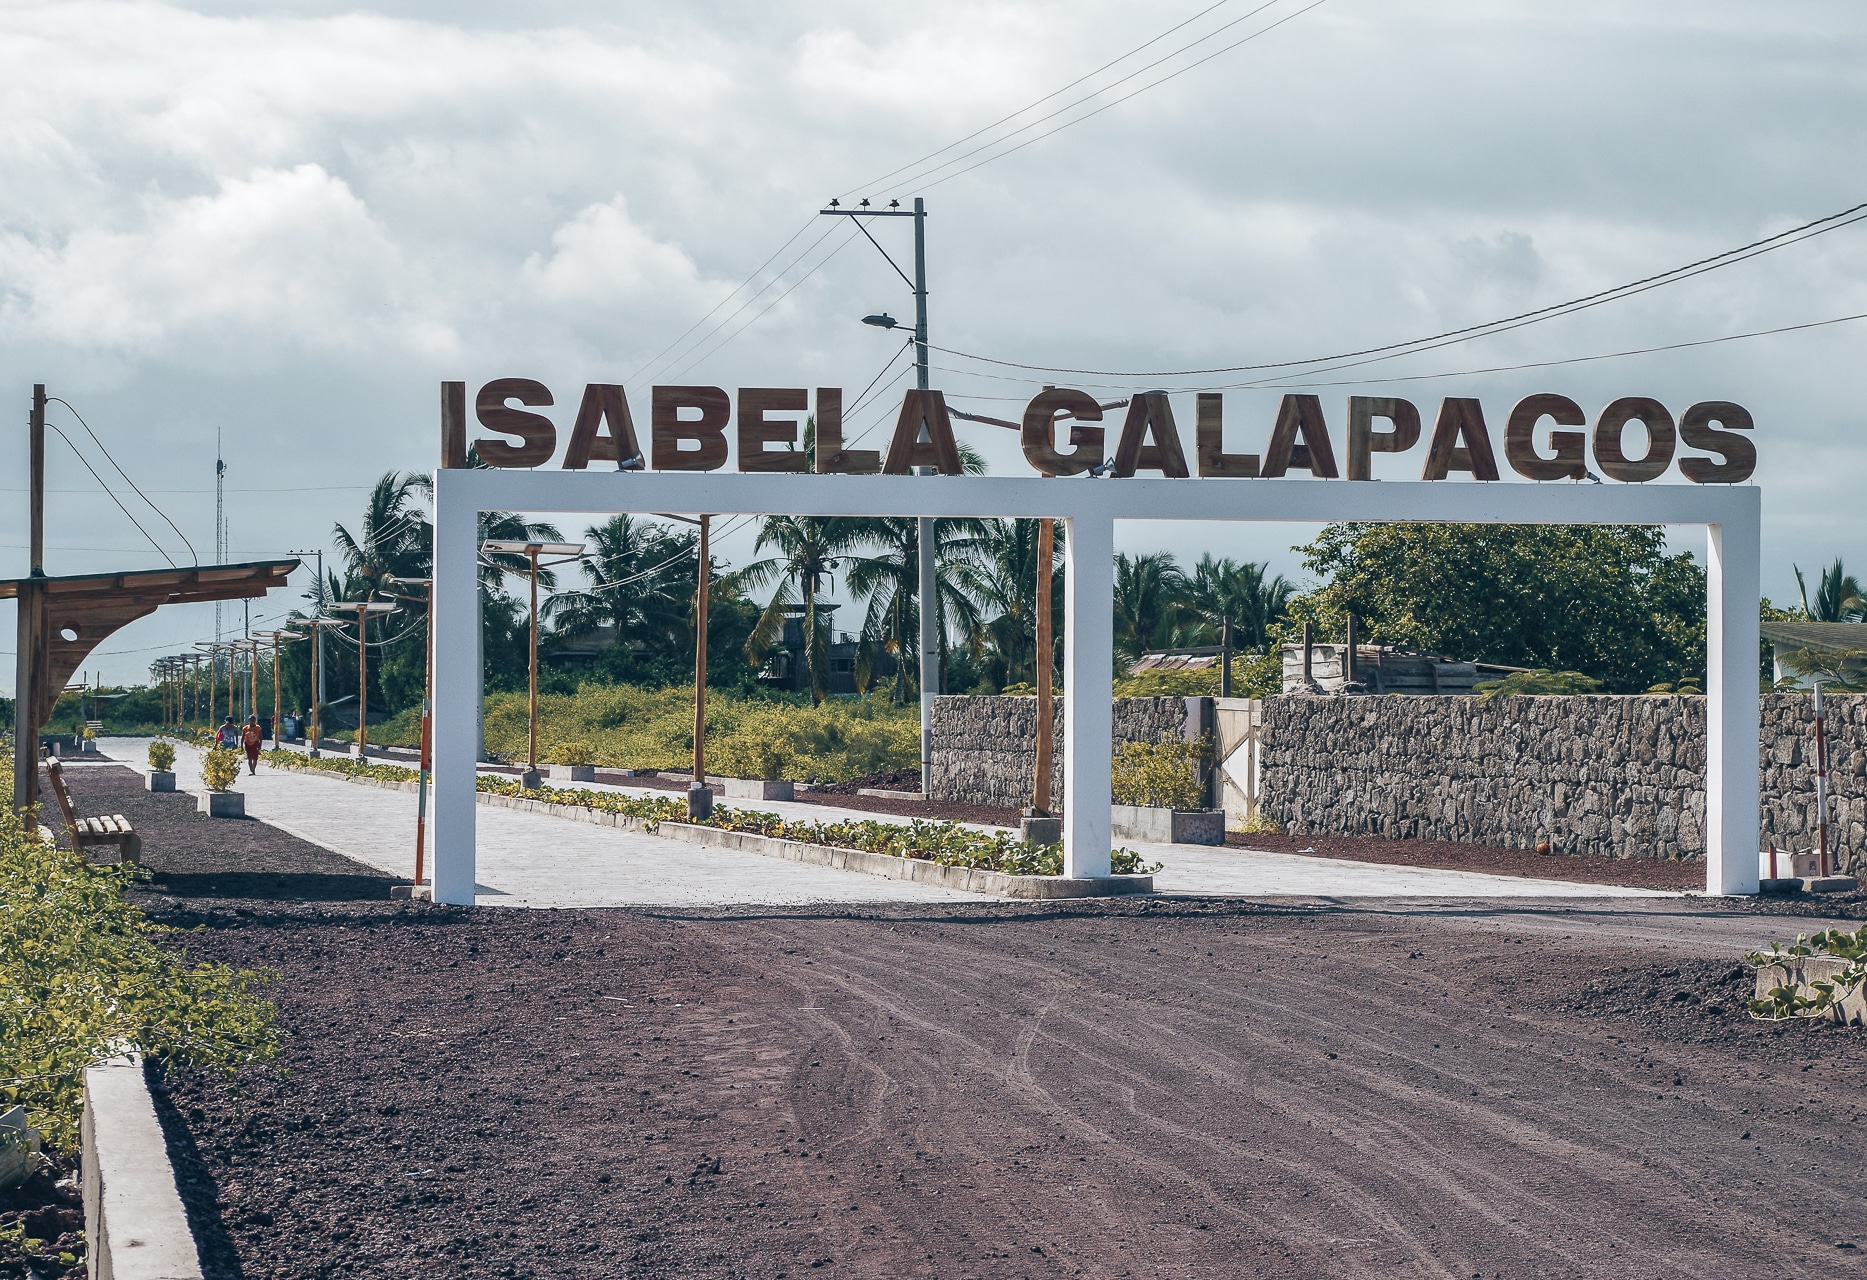 portail de l'entrée de l'île d'Isabela  avec une inscription "Isabela galapagos"